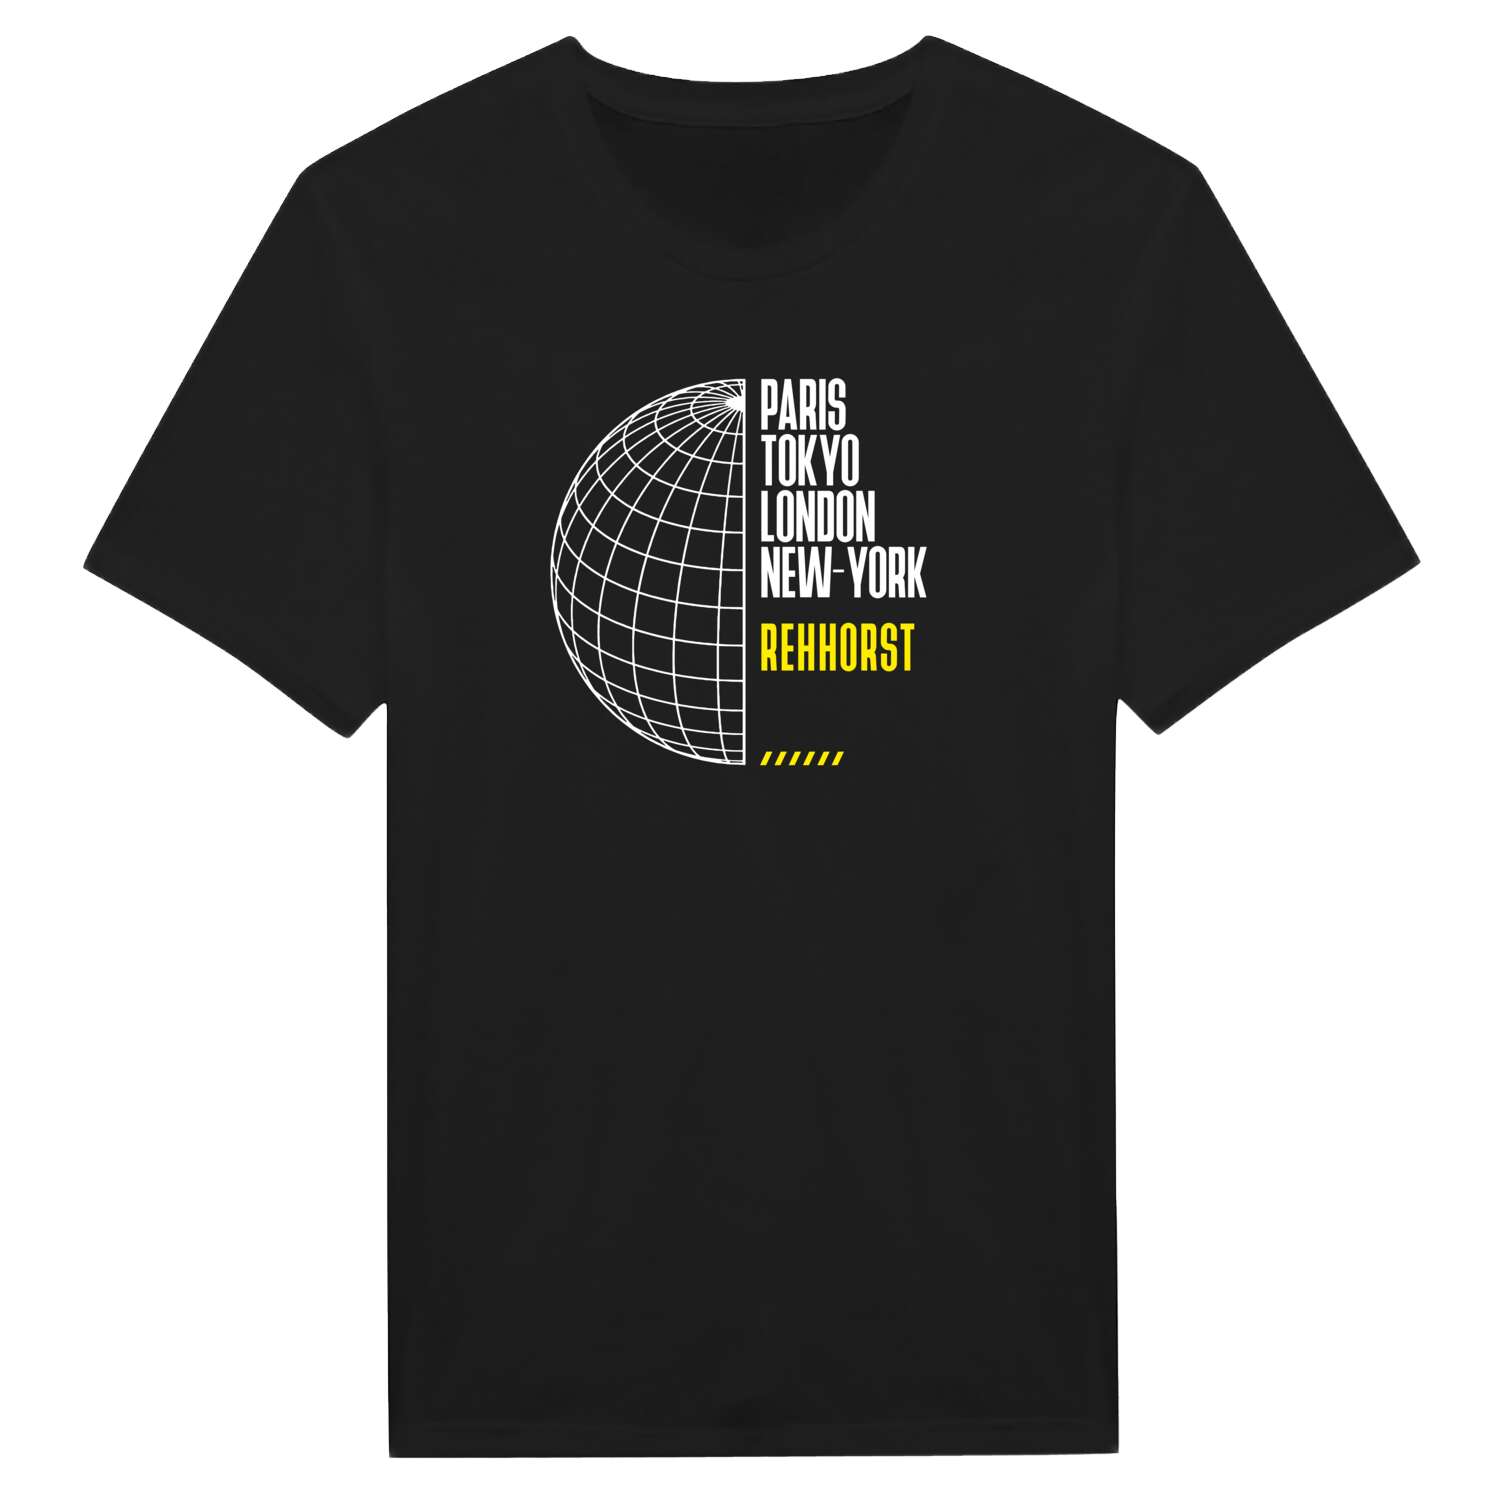 Rehhorst T-Shirt »Paris Tokyo London«